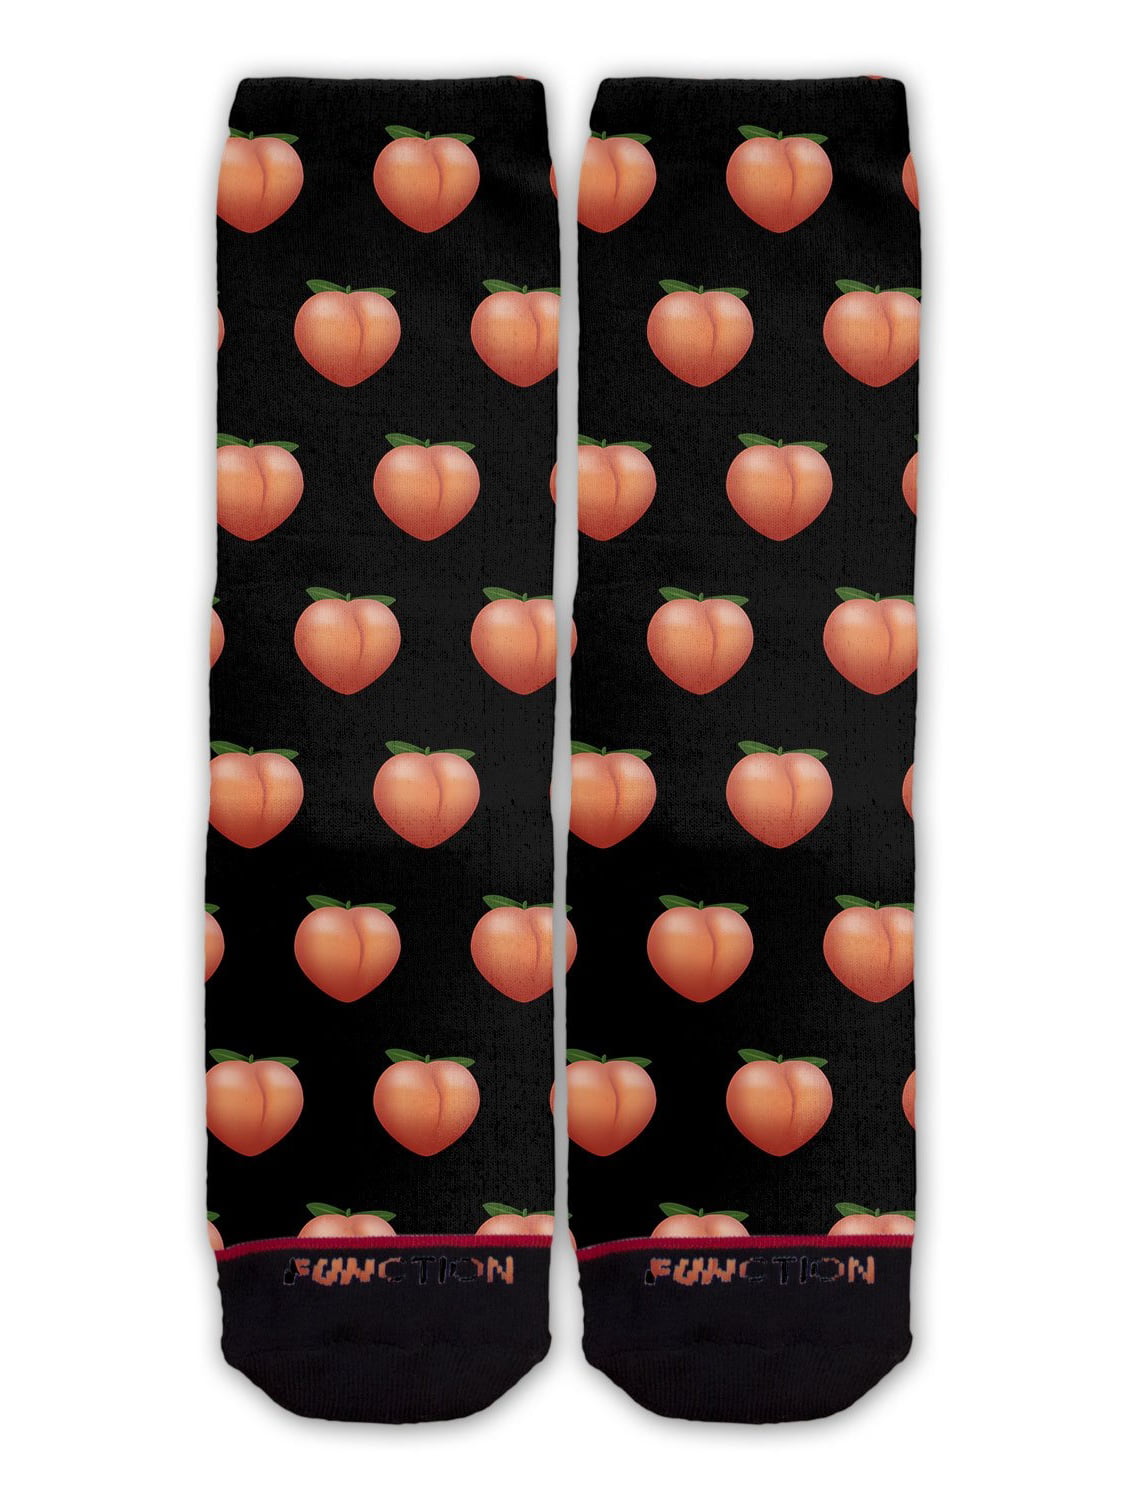 Peachy Crossing Fingers socks